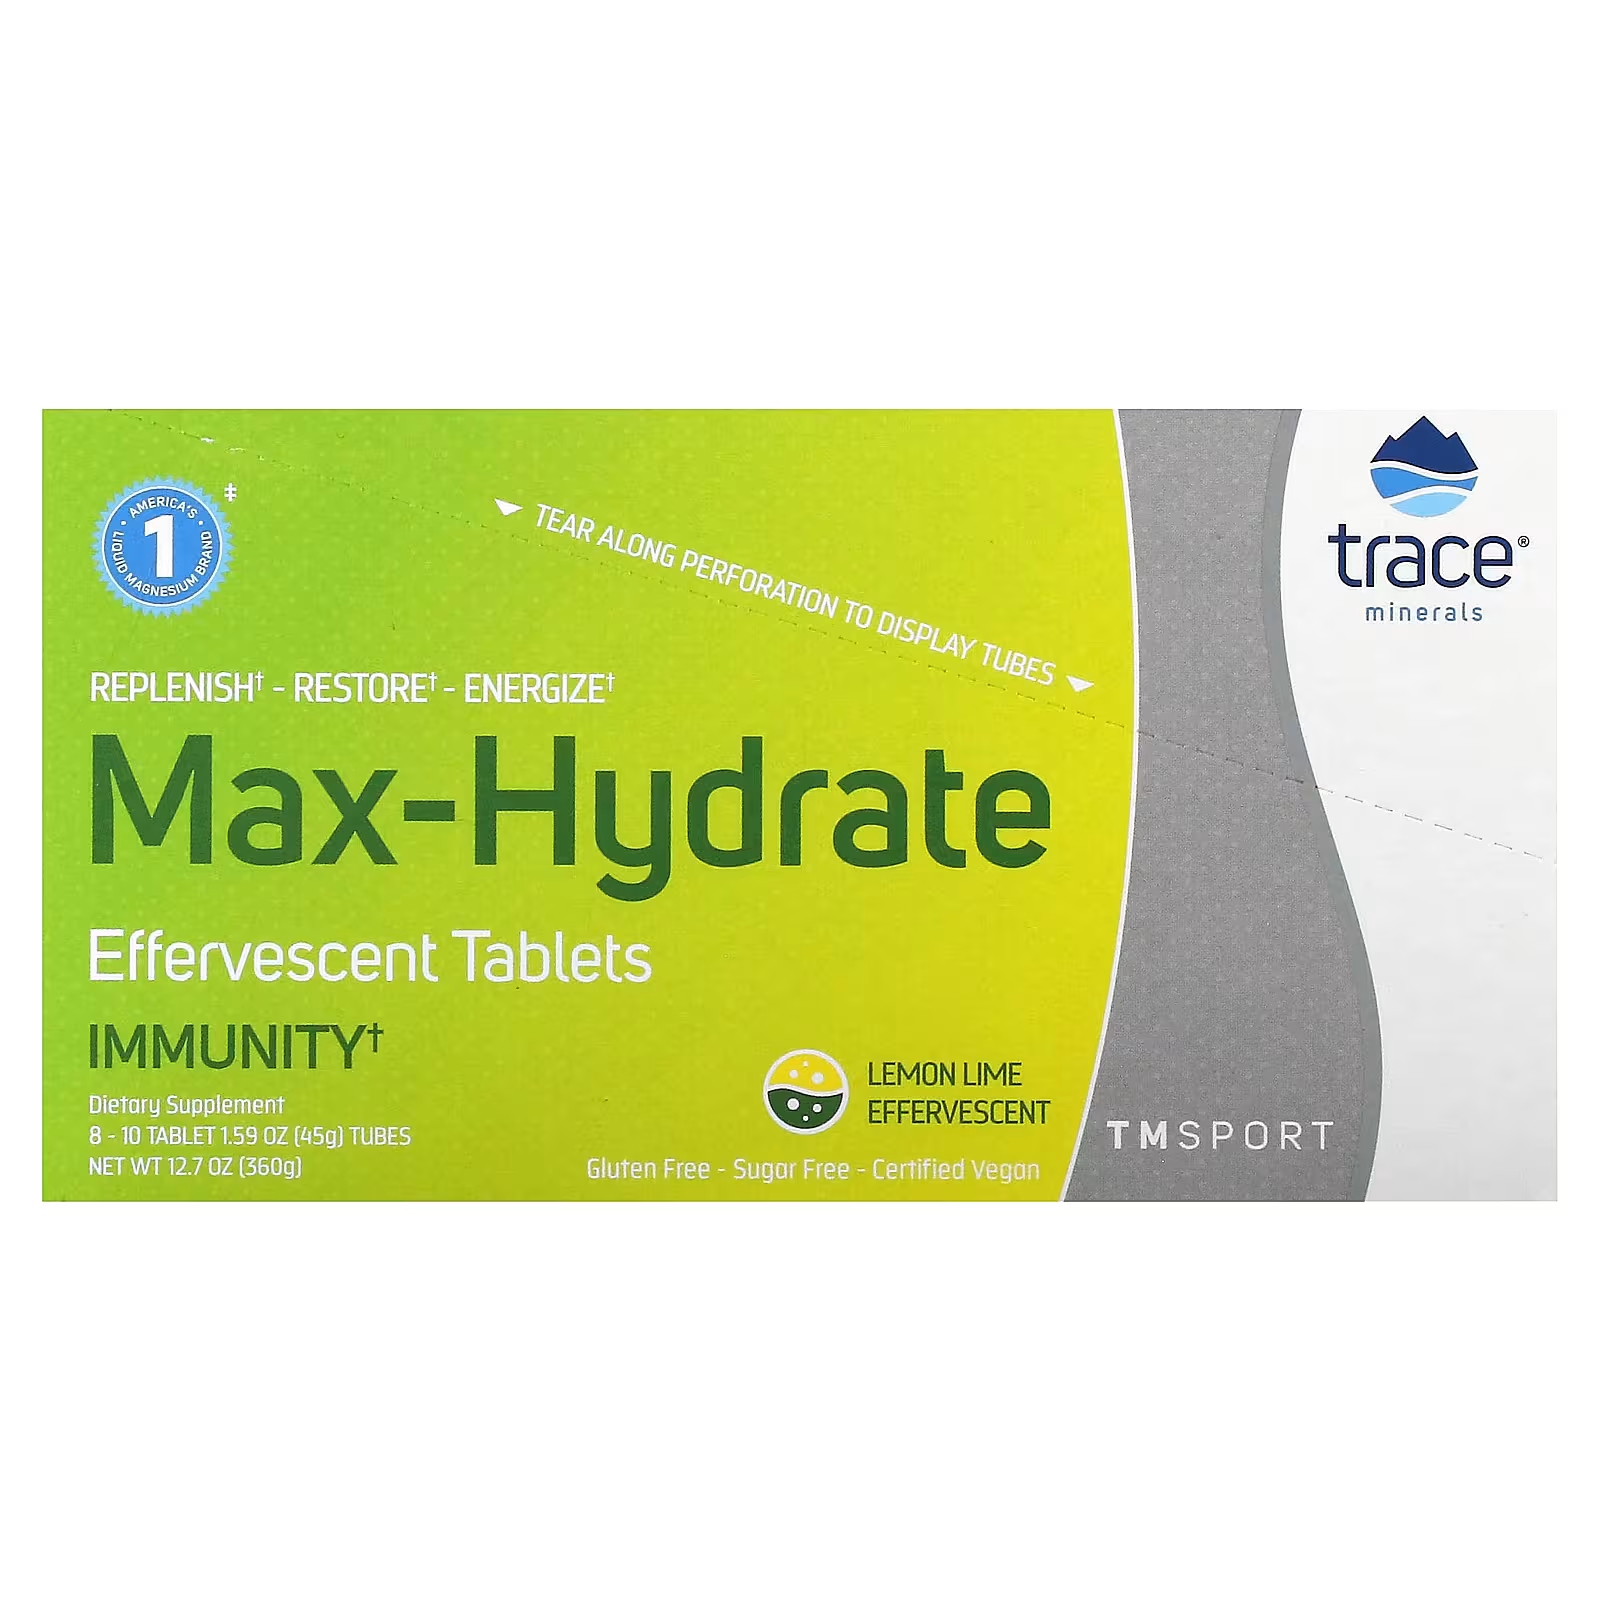 Шипучие таблетки Trace Minerals TM Sport Max-Hydrate Immunity лимон-лайм шипучие таблетки trace minerals magnesium 8 тюбиков по 10 таблеток